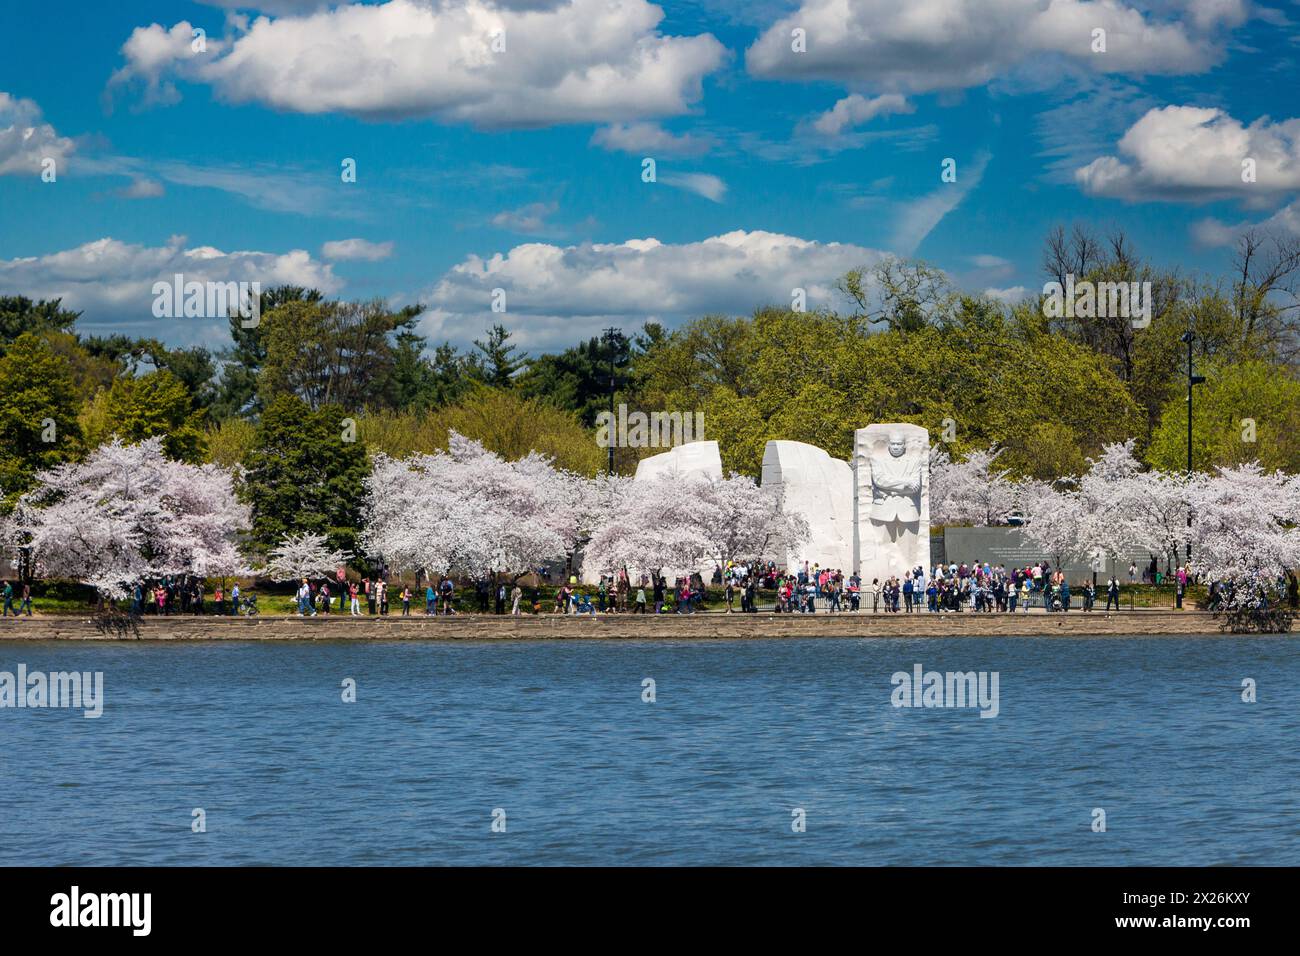 Washington D.C., fiori di ciliegio e Martin Luther King Jr. Memorial. Foto Stock